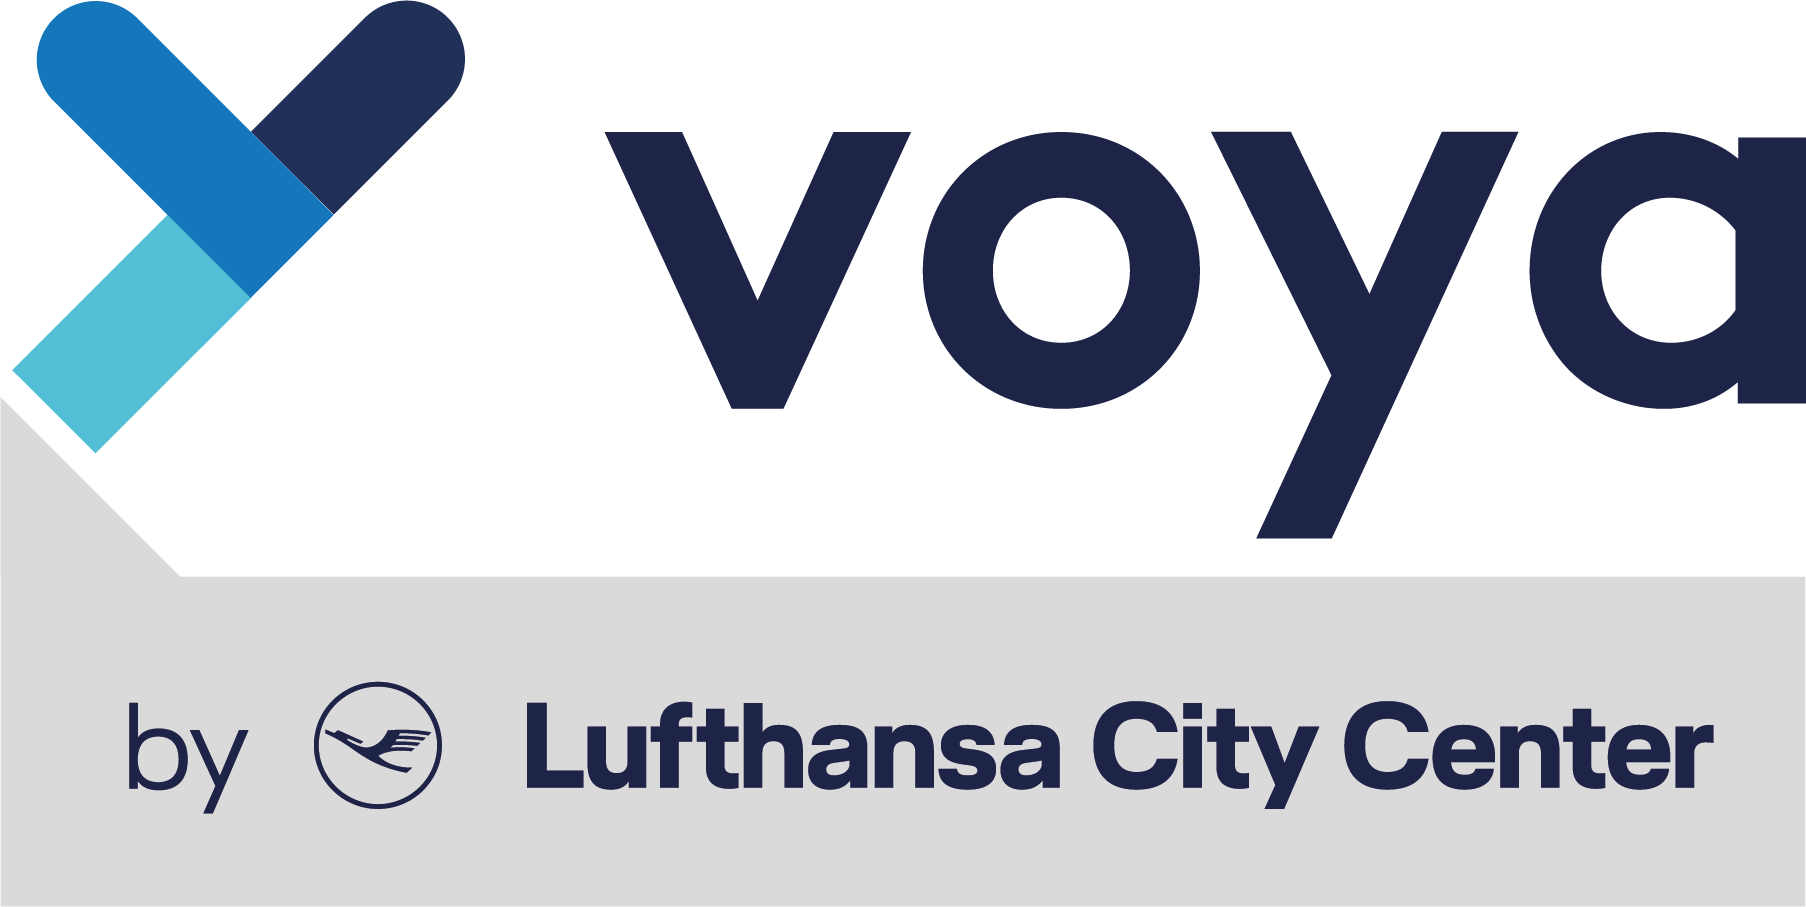 Logo LCC Voya small